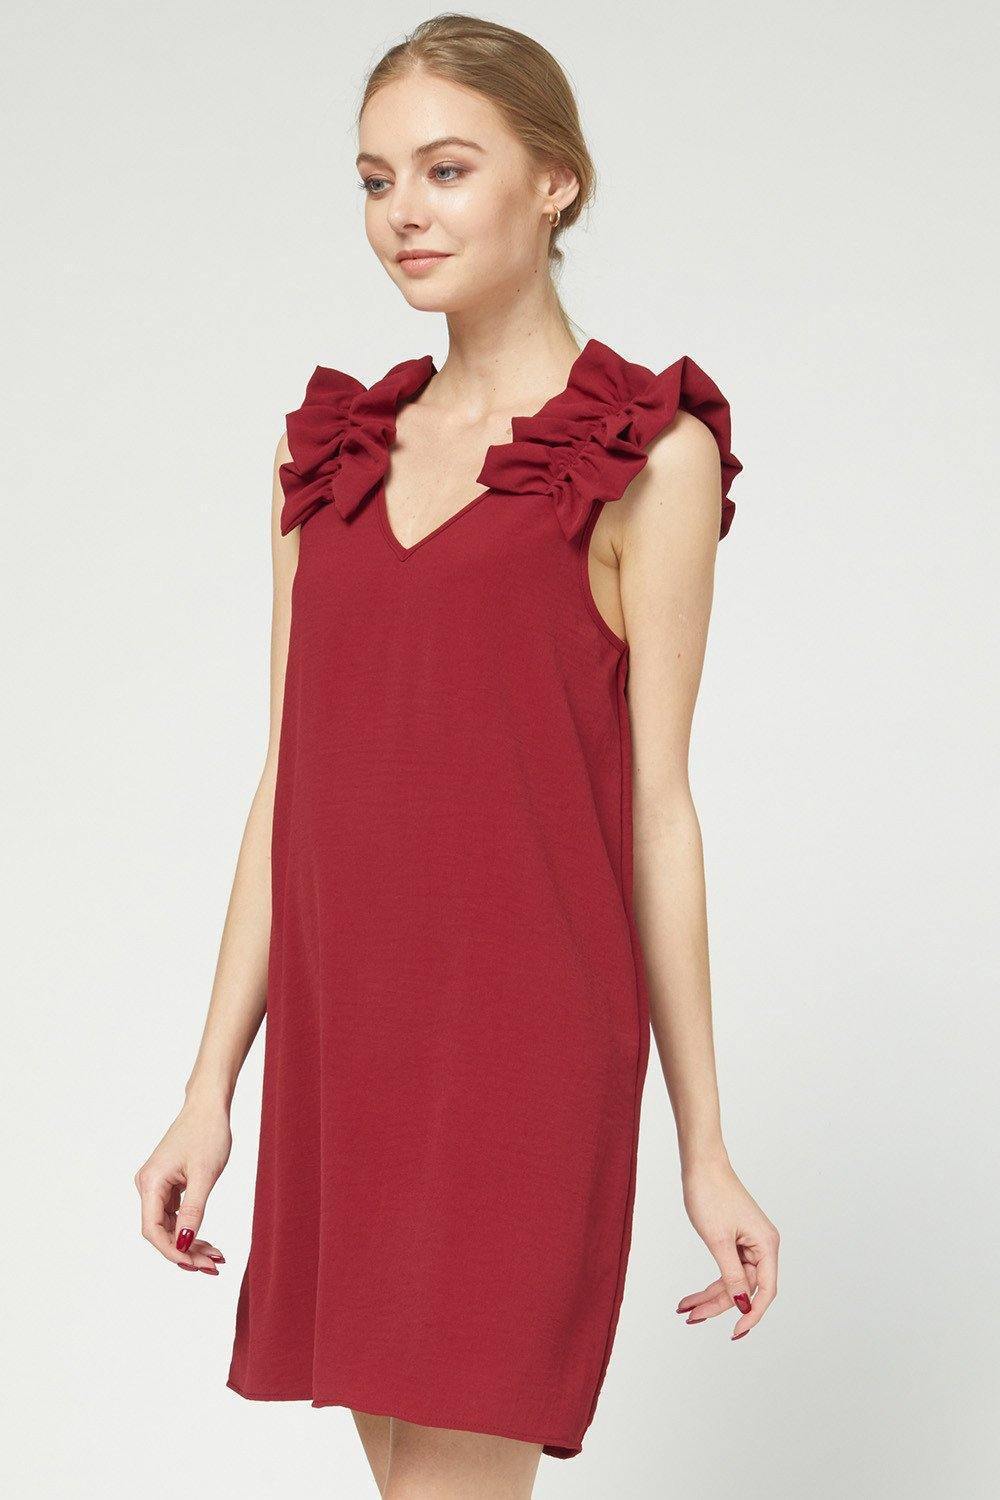 Ruffle Sleeveless Dress in Ruby - Tres Chic Houston